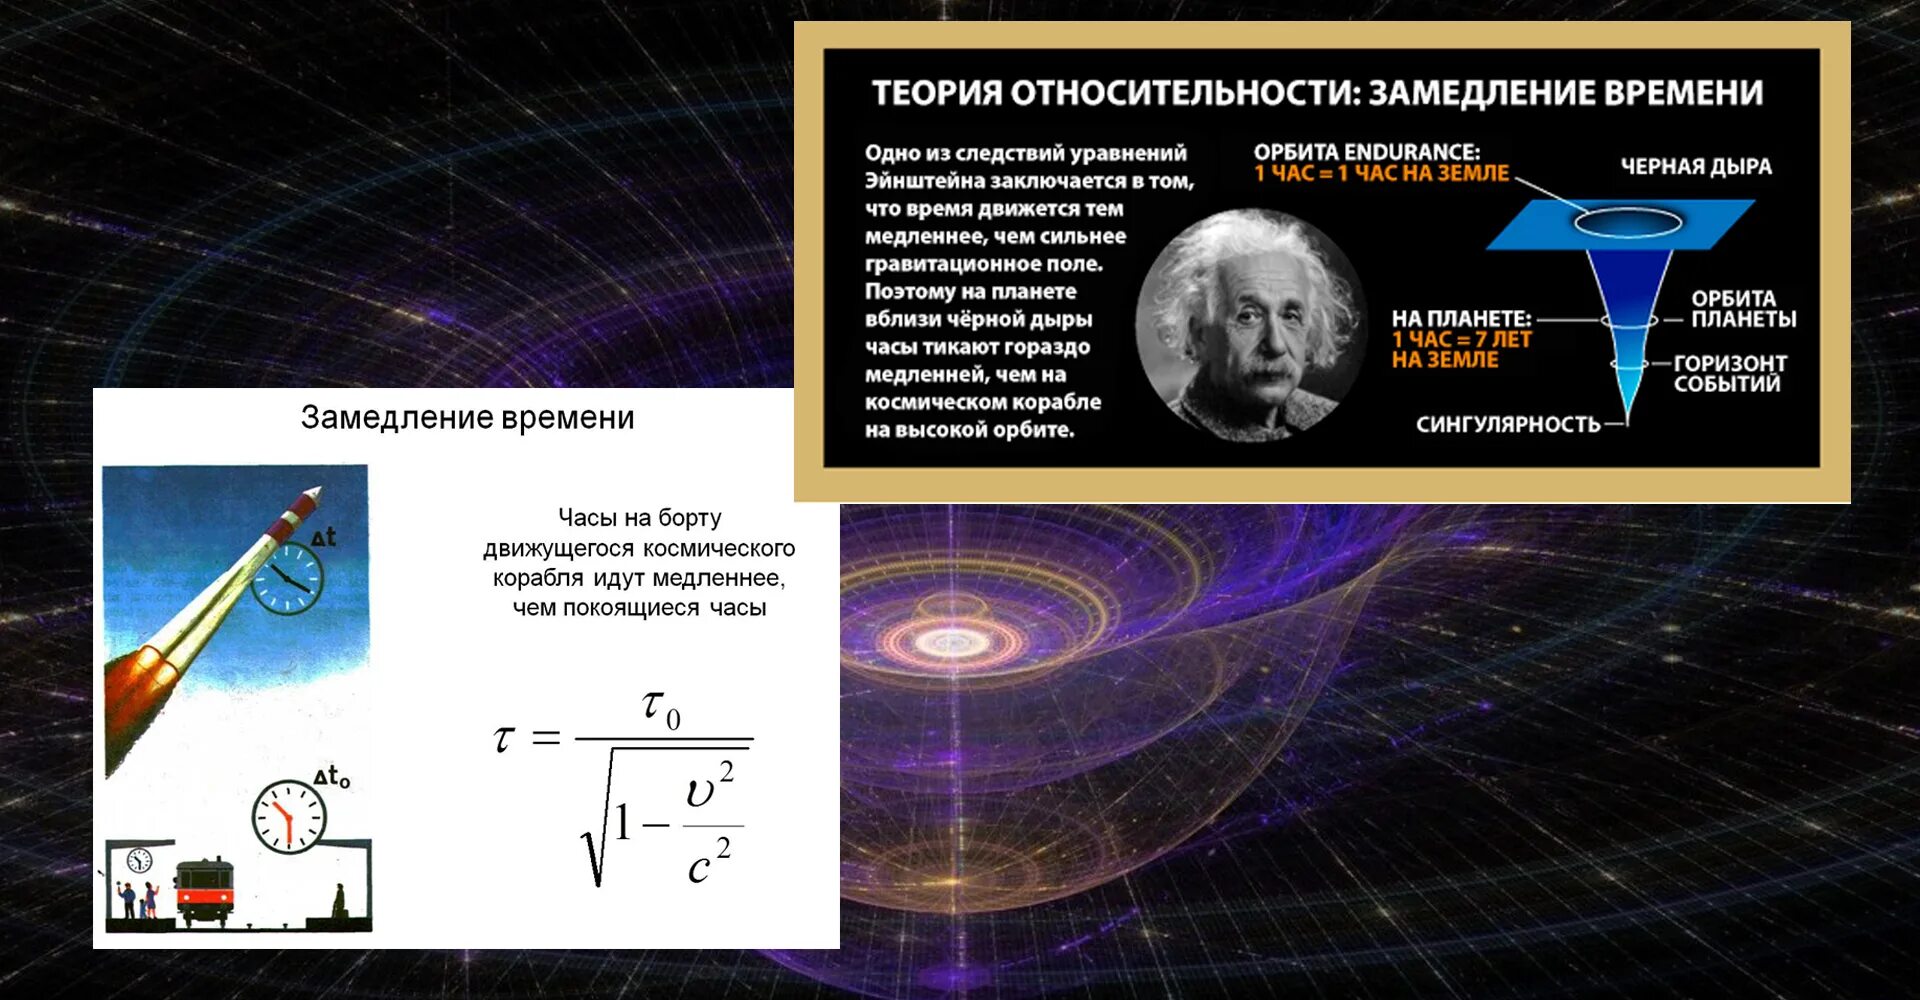 Сколько часов теории. Теория относительности Эйнштейна. Общая теория относительности Ньютона. Теория относительности Эйнштейна пространство. Замедление времени в специальной теории относительности.